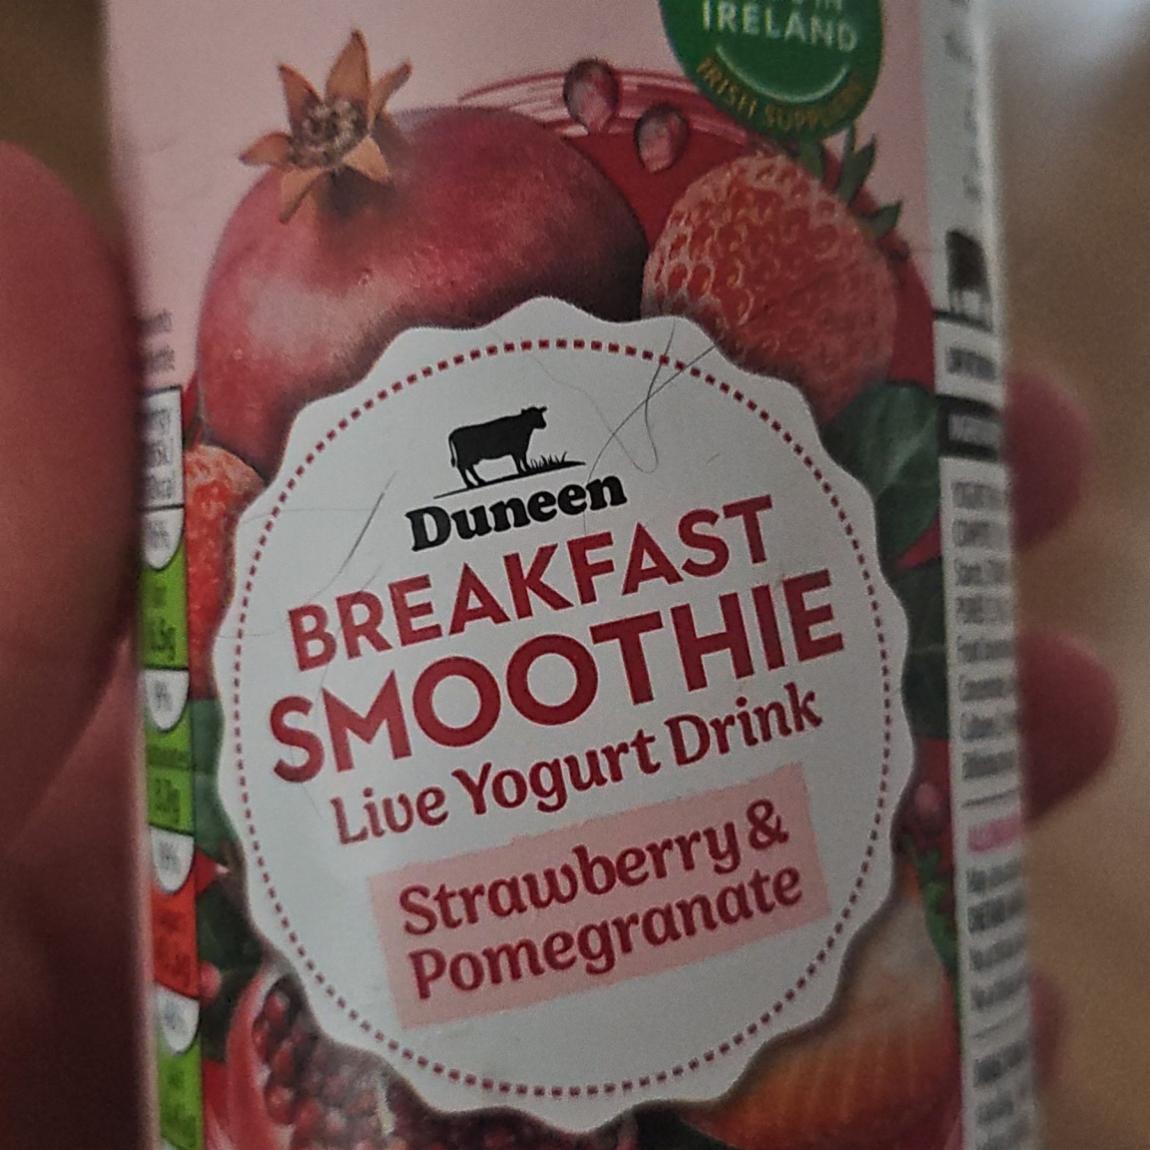 Fotografie - Strawberry & Pomegranate Breakfast Smoothie Live Yogurt Drink Duneen